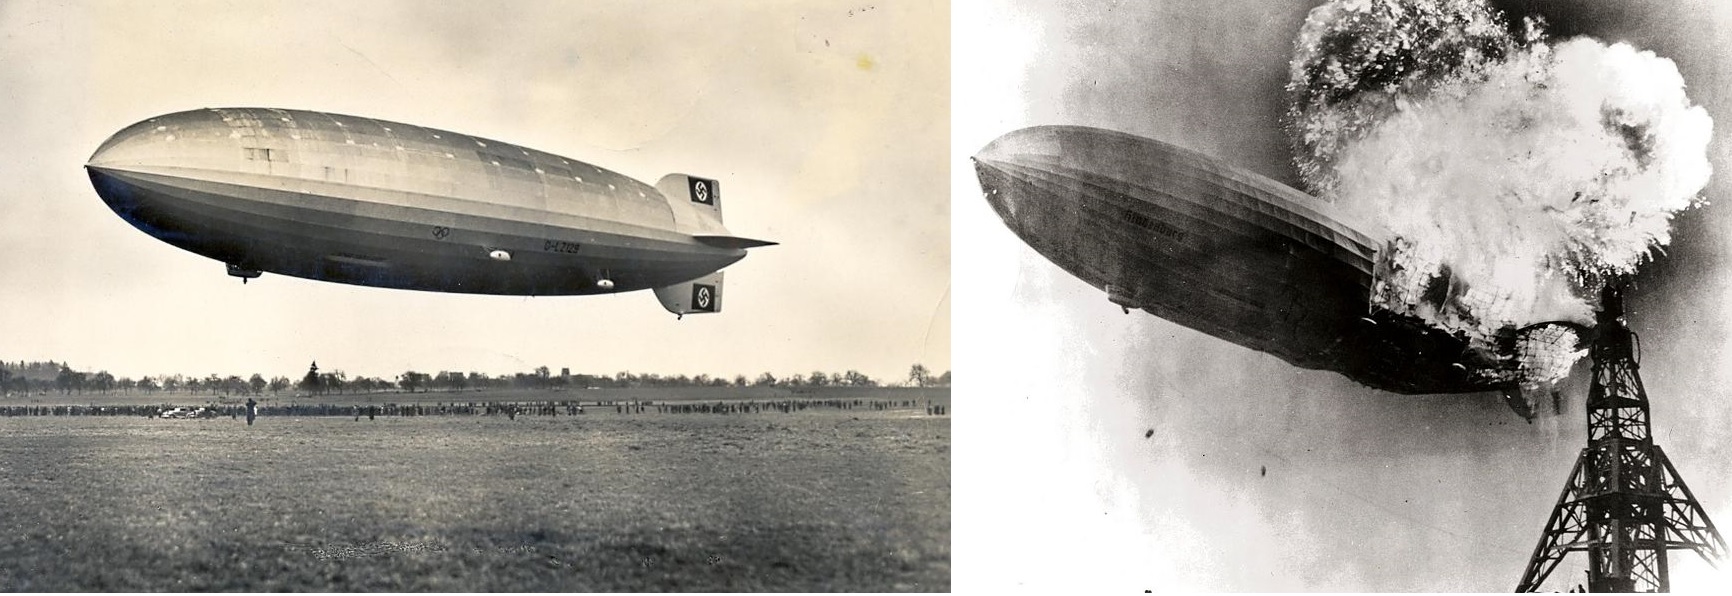 Resim 5. Propaganda kurbanı Hindenburg ve bir devrin kapanışı. Kaynaklar [19-20].